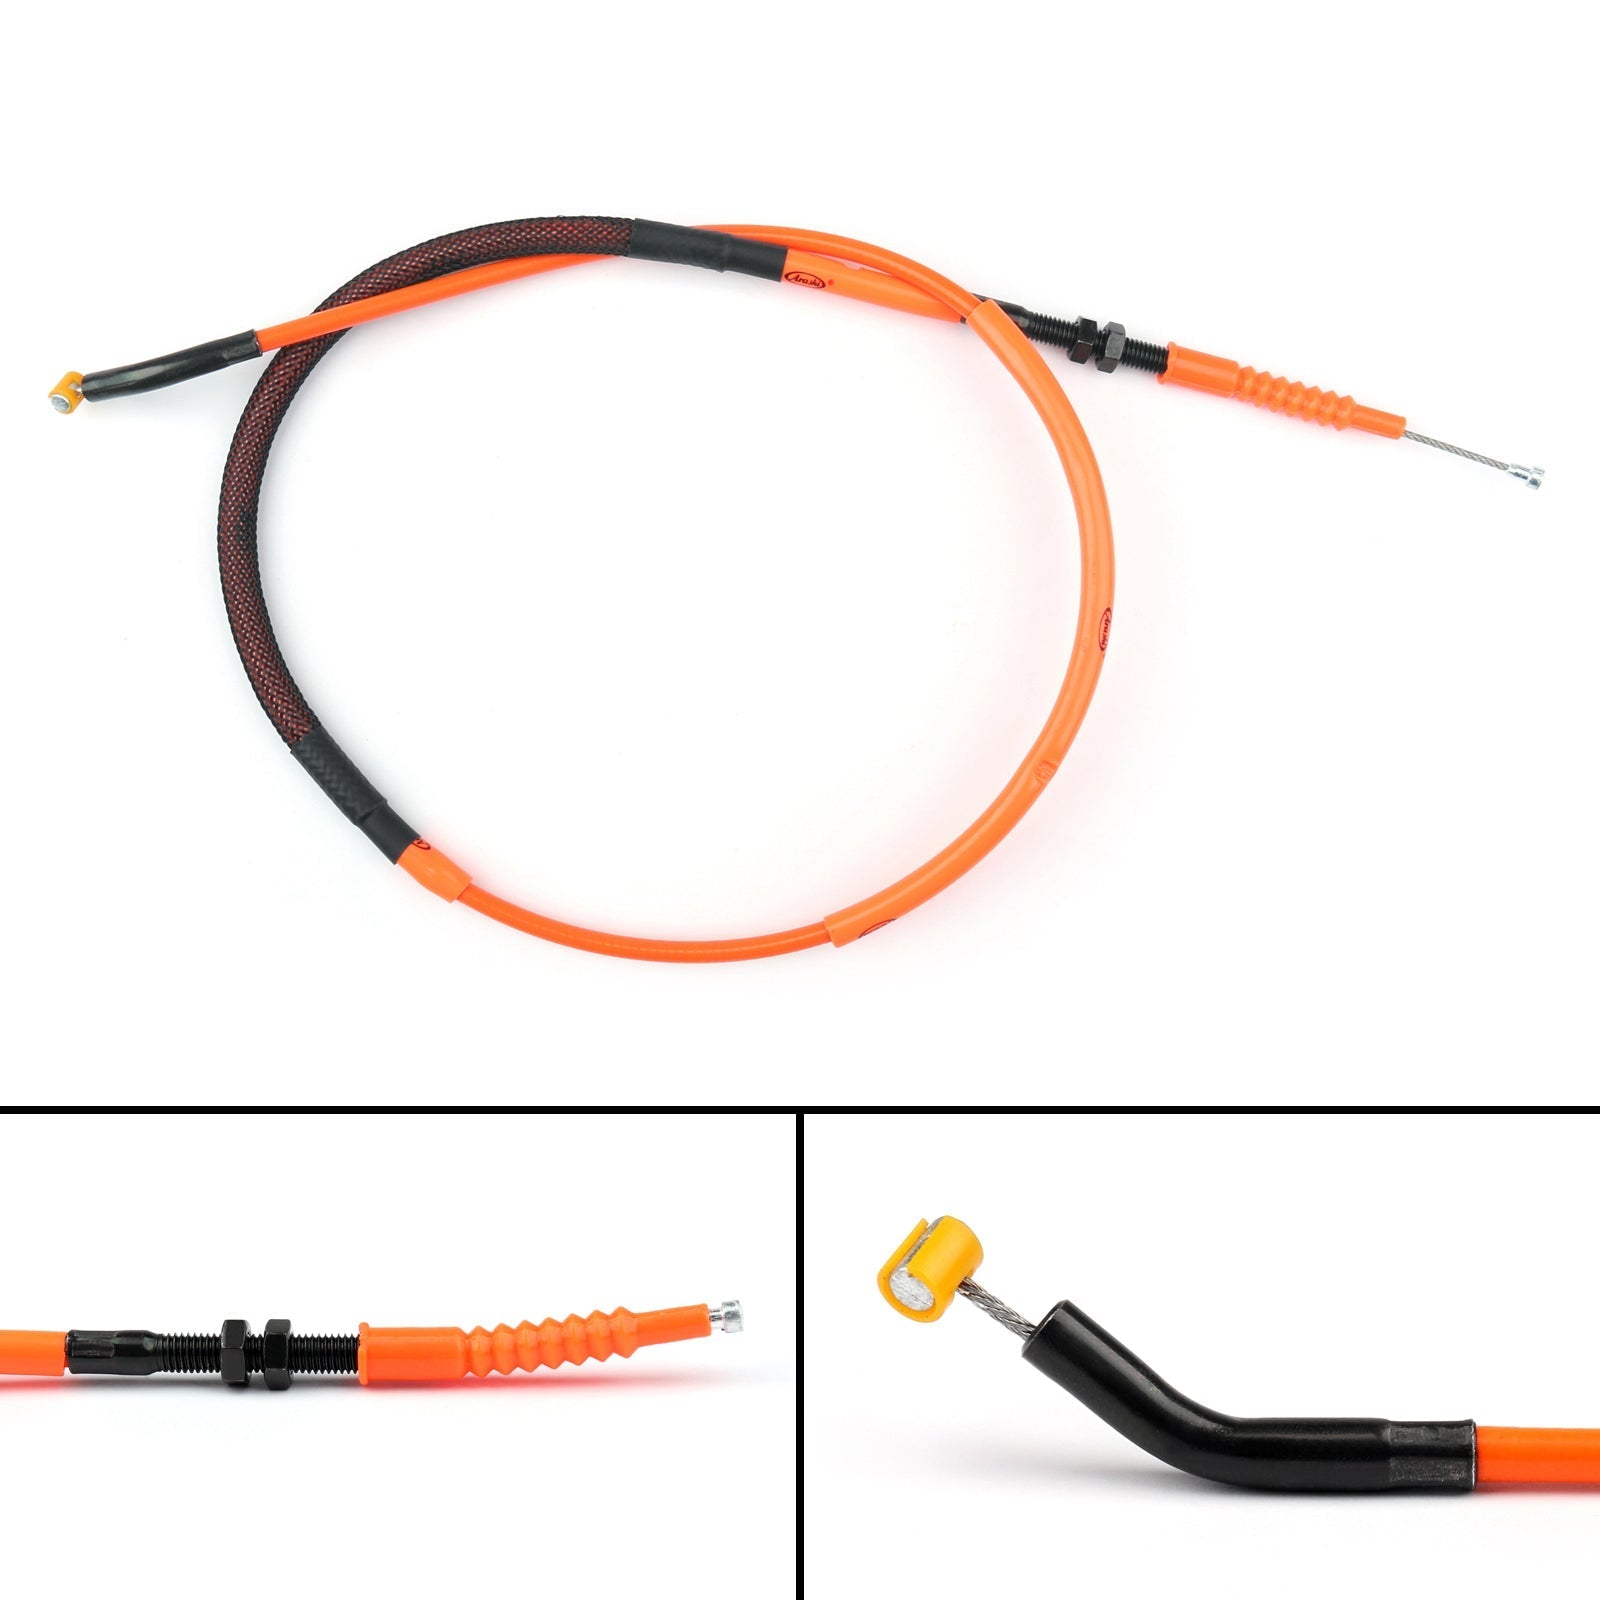 Cable de embrague de alambre de acero de repuesto para Kawasaki Ninja ZX-6R 2009-2016 genérico